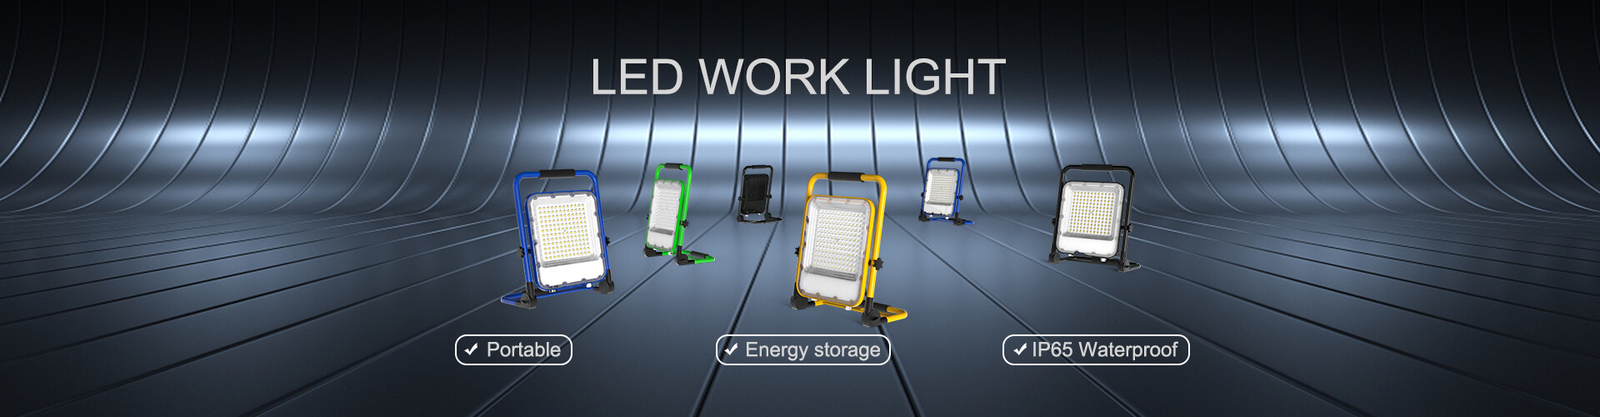 chất lượng Đèn đường LED chạy bằng năng lượng mặt trời nhà máy